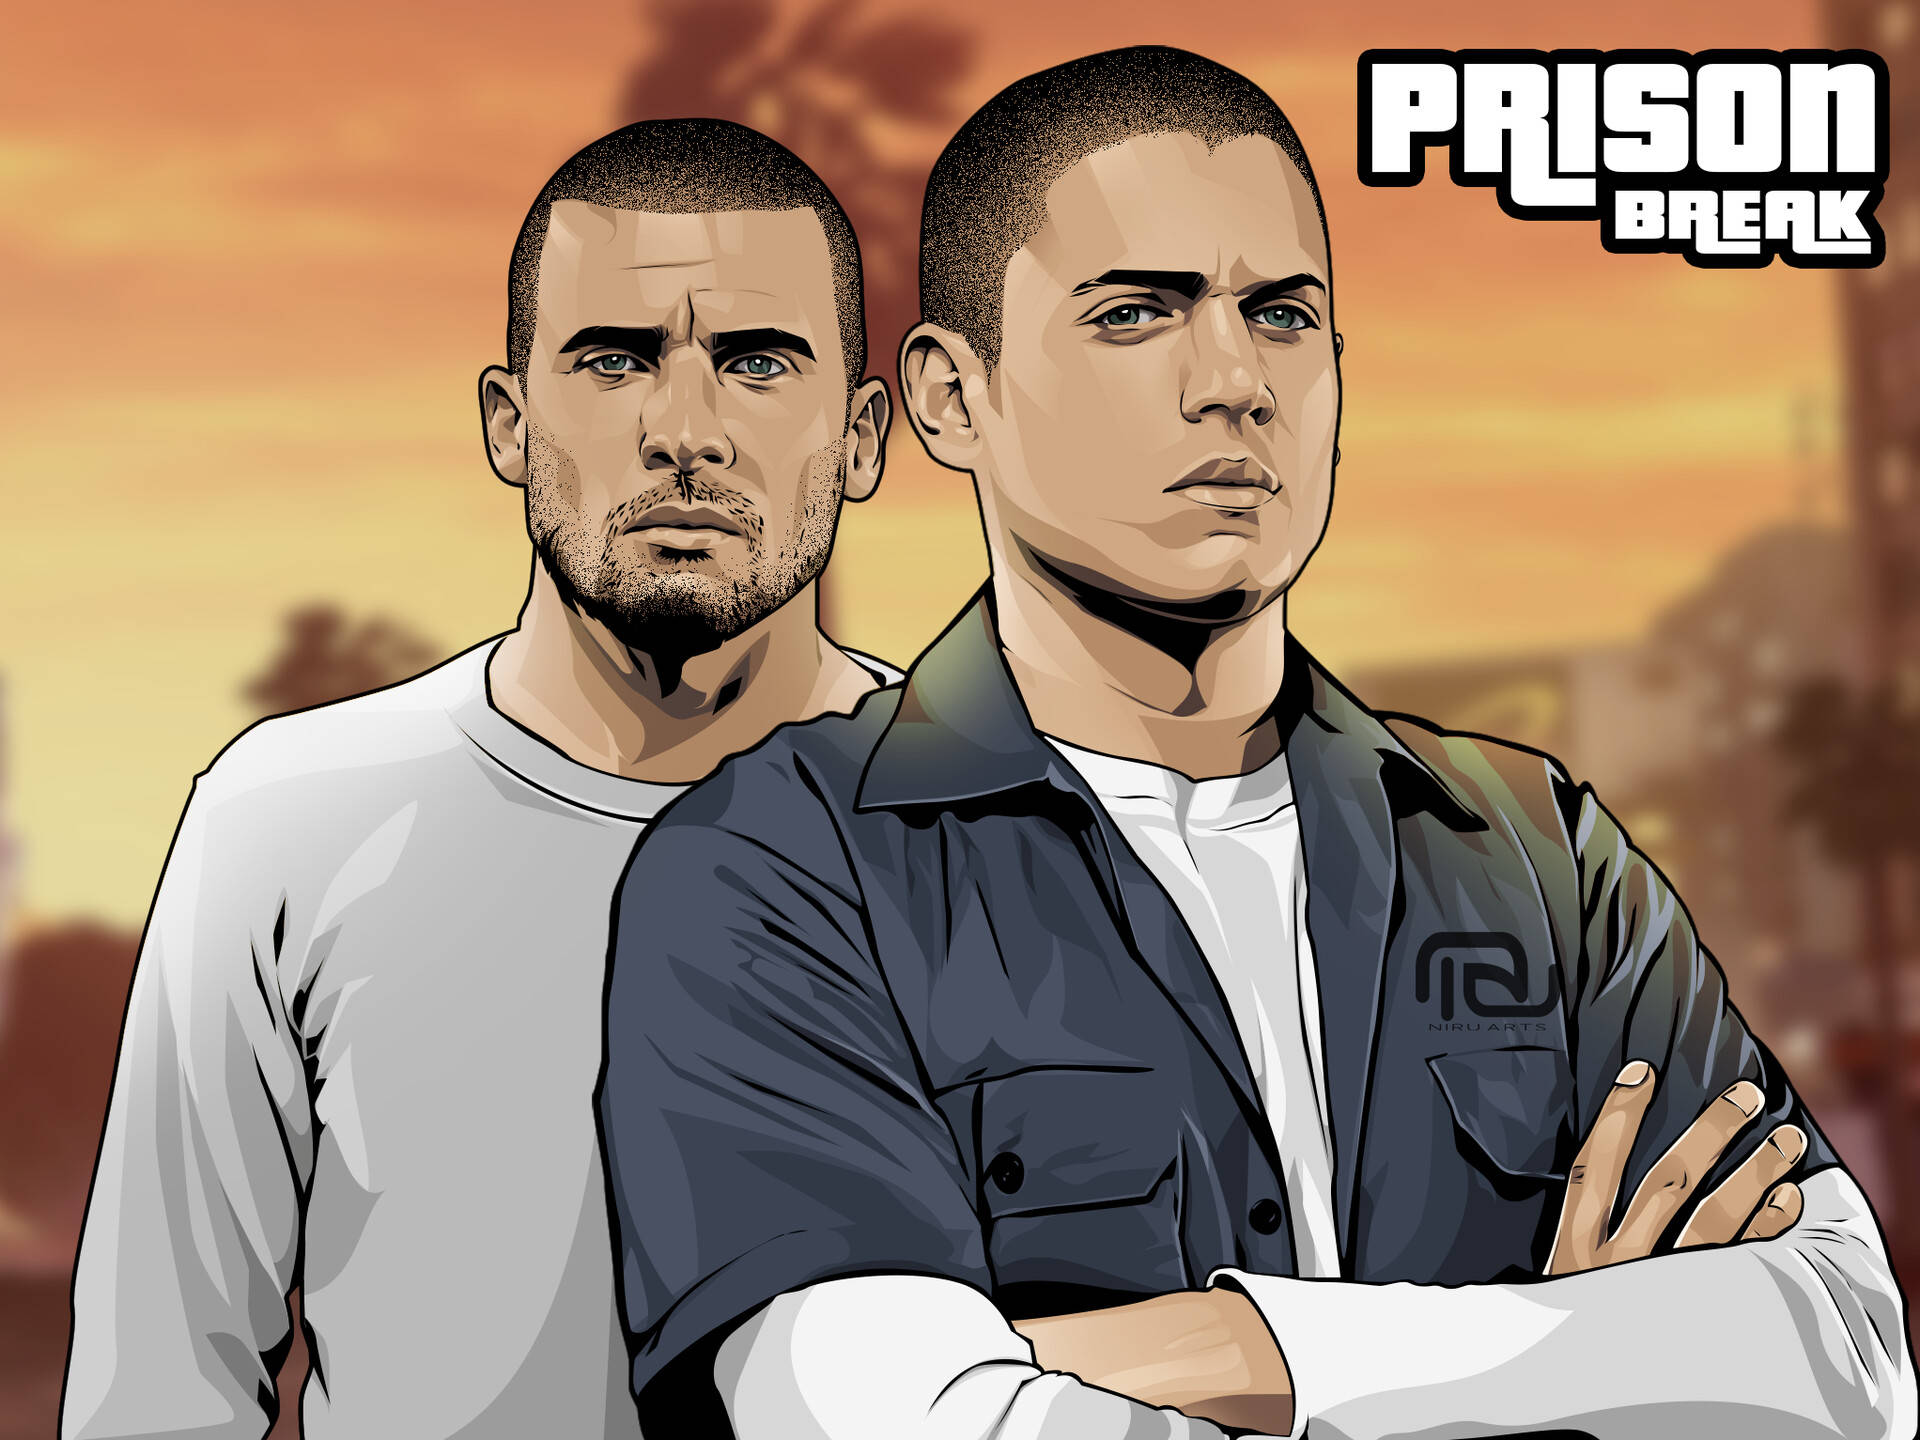 Prison Break Digital Graphic Cover Background